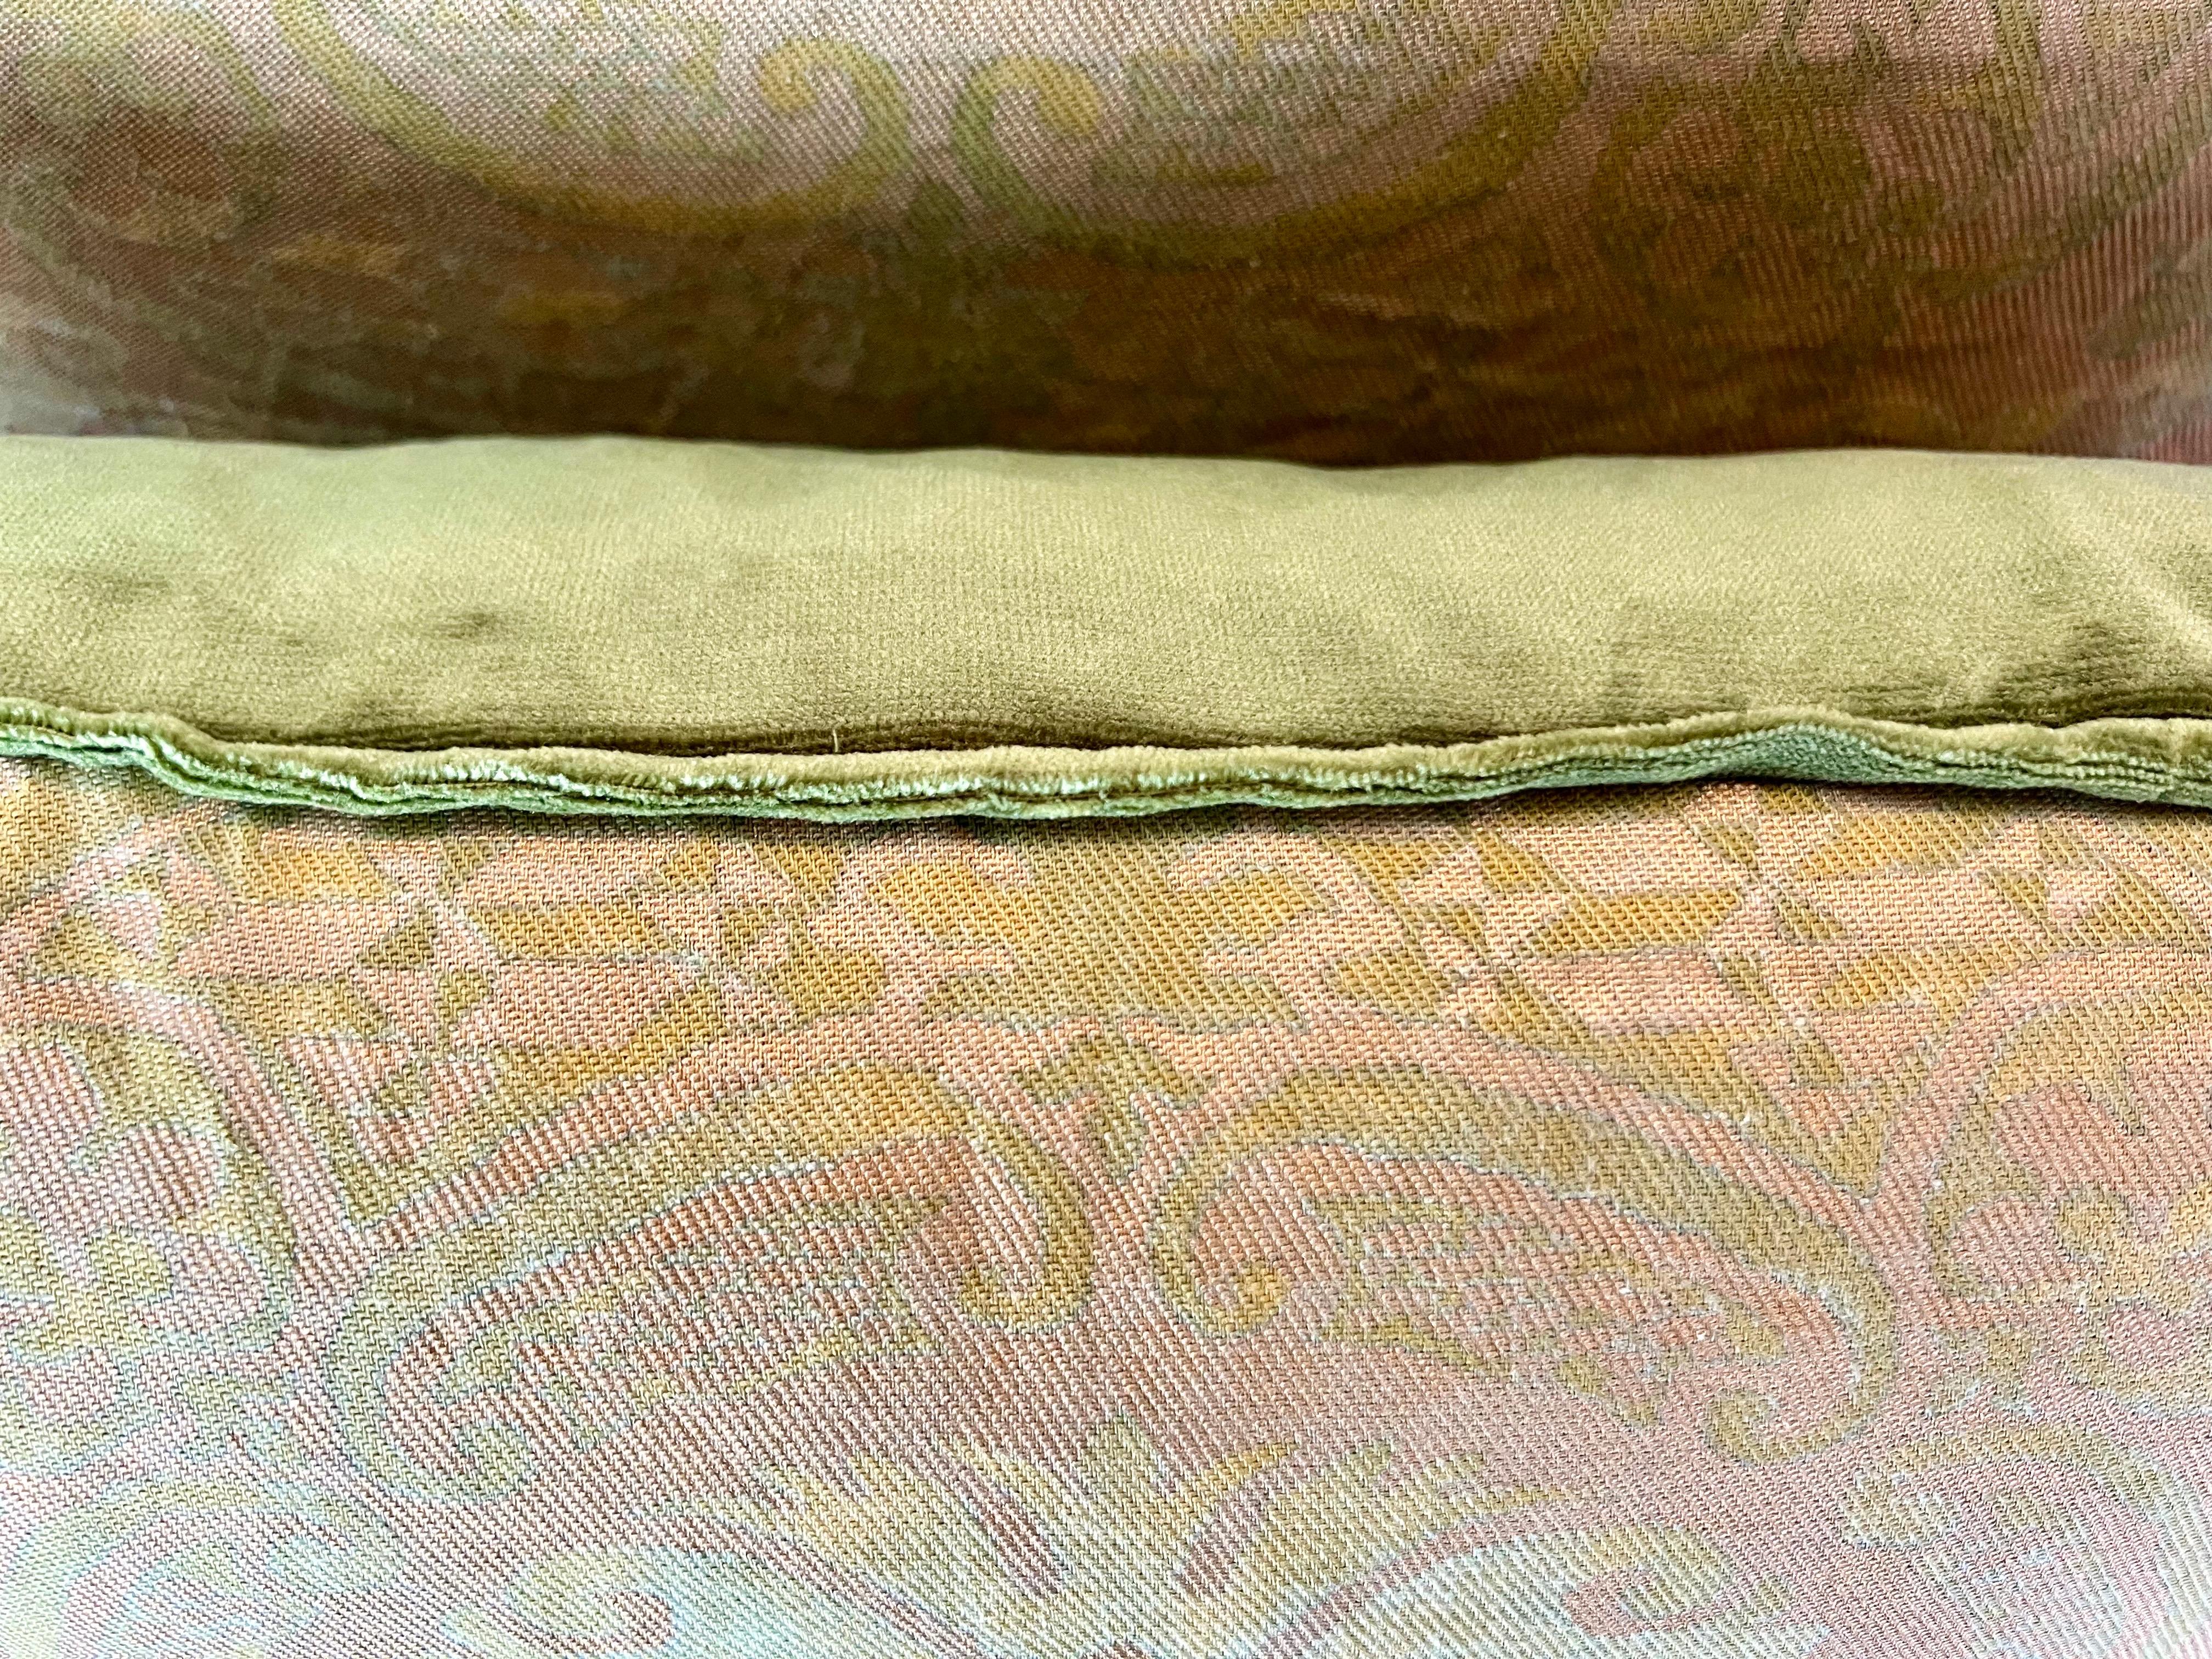 Renaissance Pair of Green Orsini Patterned Fortuny Pillows w/ Velvet Backs